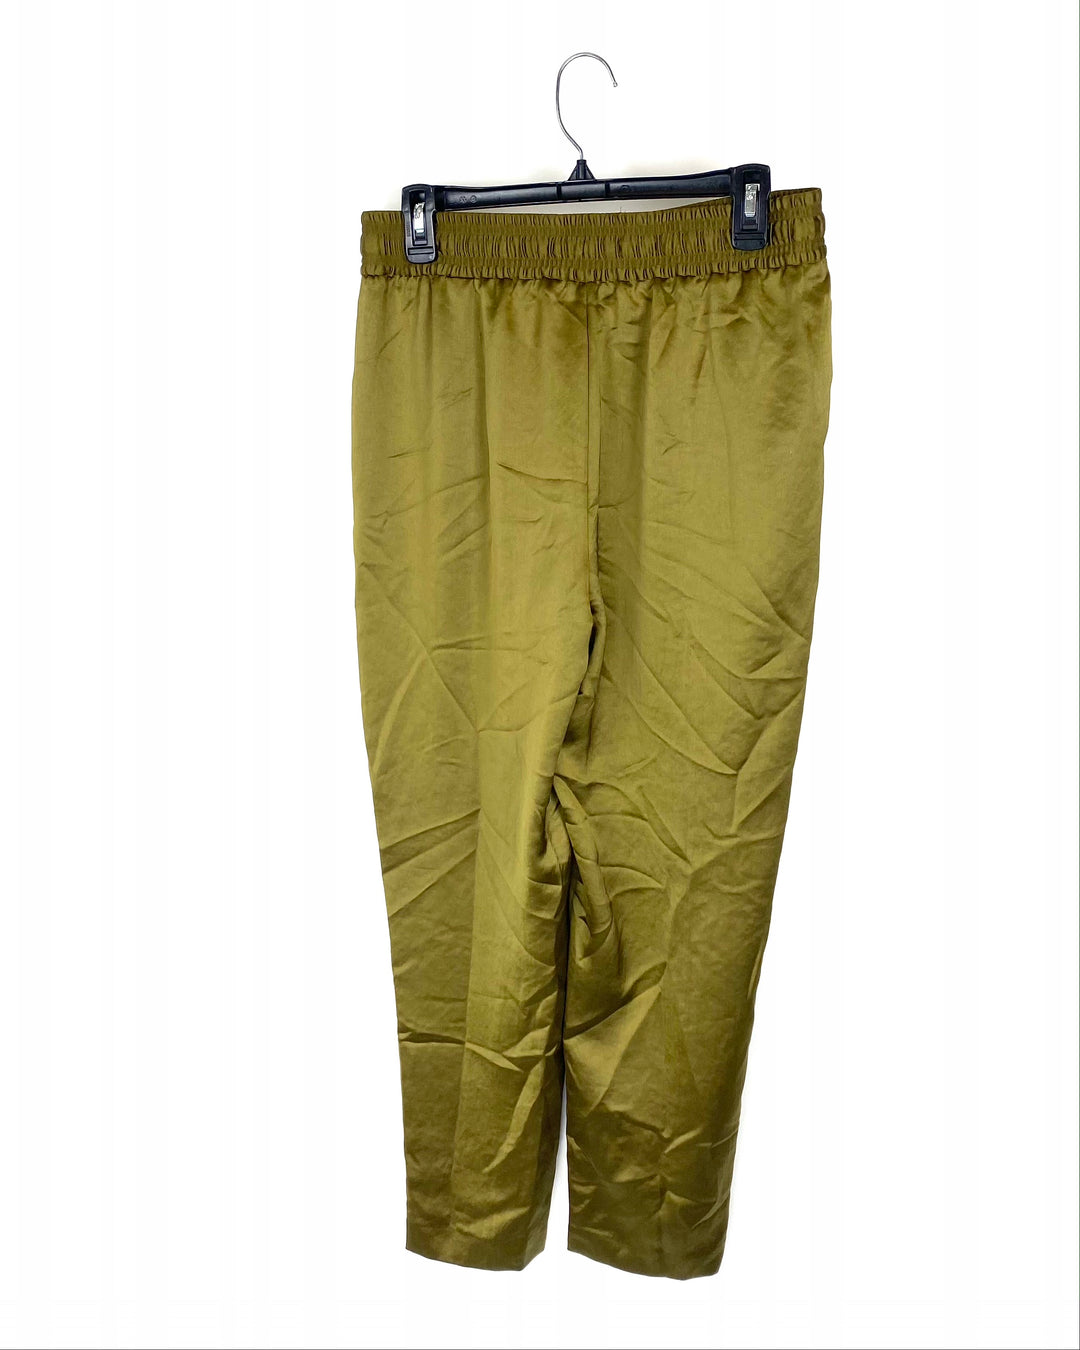 Green Satin Pants - Size 8